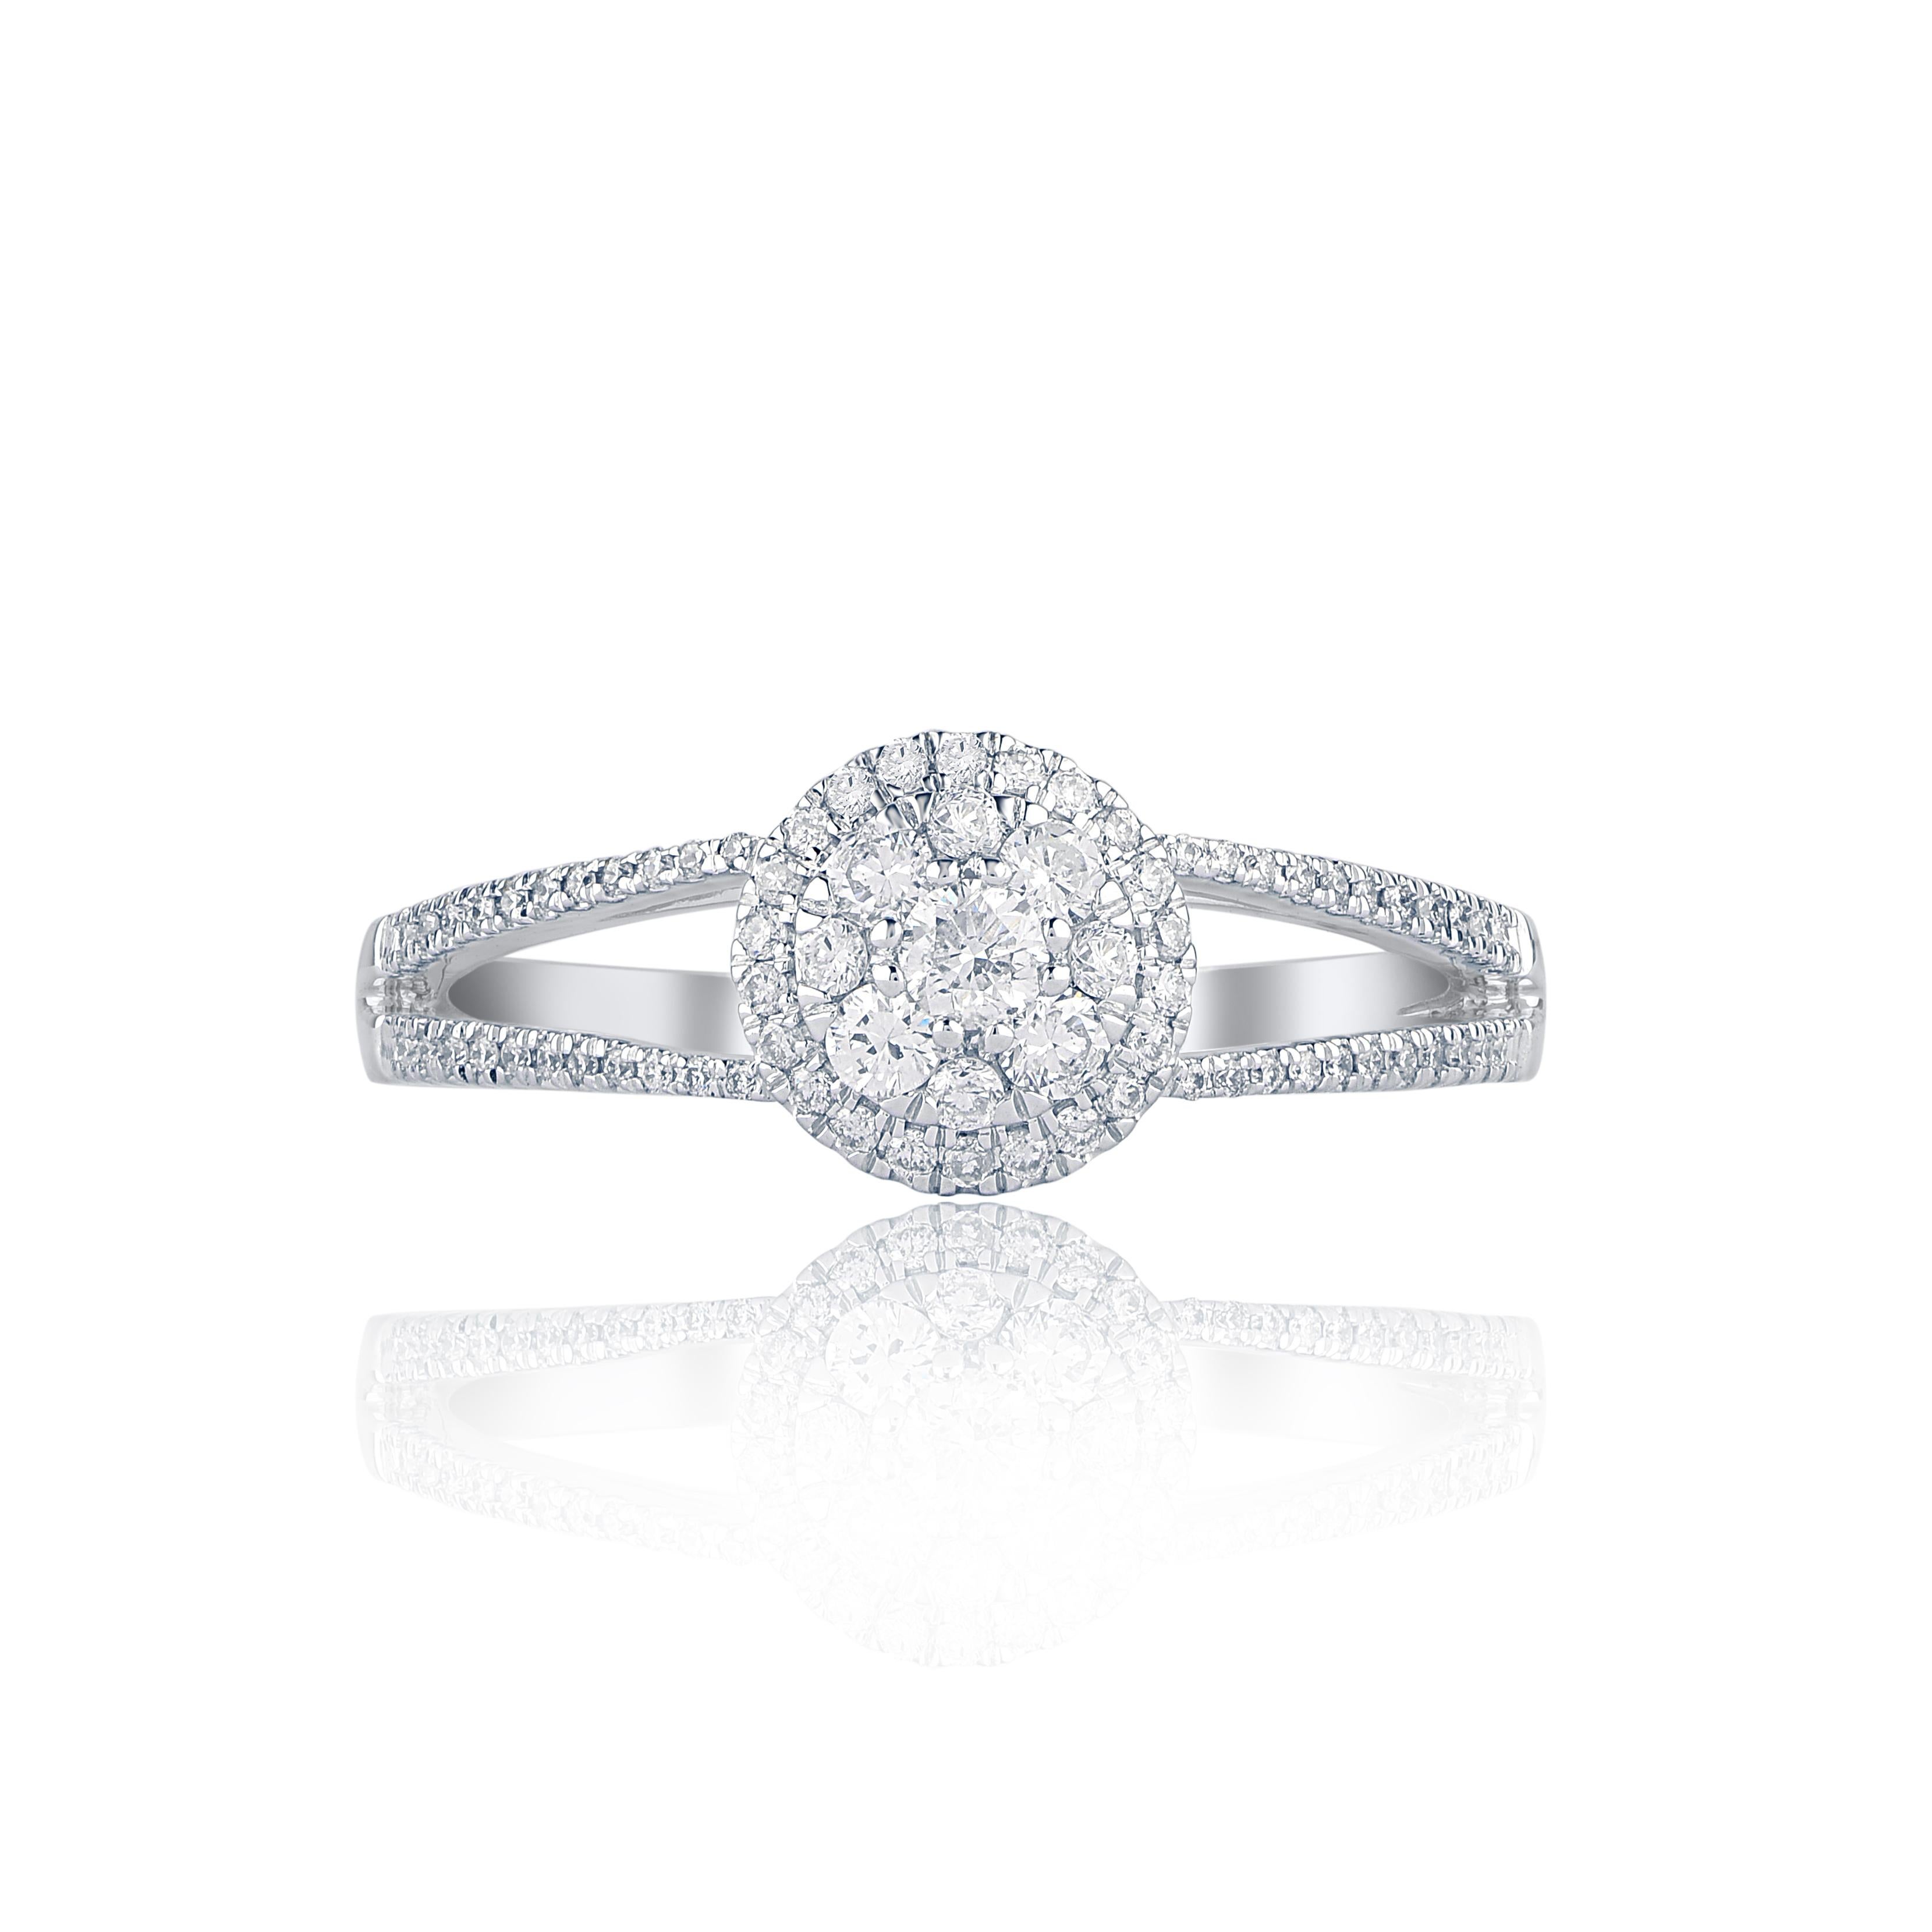 Bringen Sie Ihre Liebe zu ihr auf die klassischste Art und Weise mit diesem Diamantring zum Ausdruck. Gefertigt aus 14 Karat Weißgold. In diesem Ehering funkeln 75 runde Diamanten im Einzel- und Brillantschliff, die in einer Zackenfassung gefasst